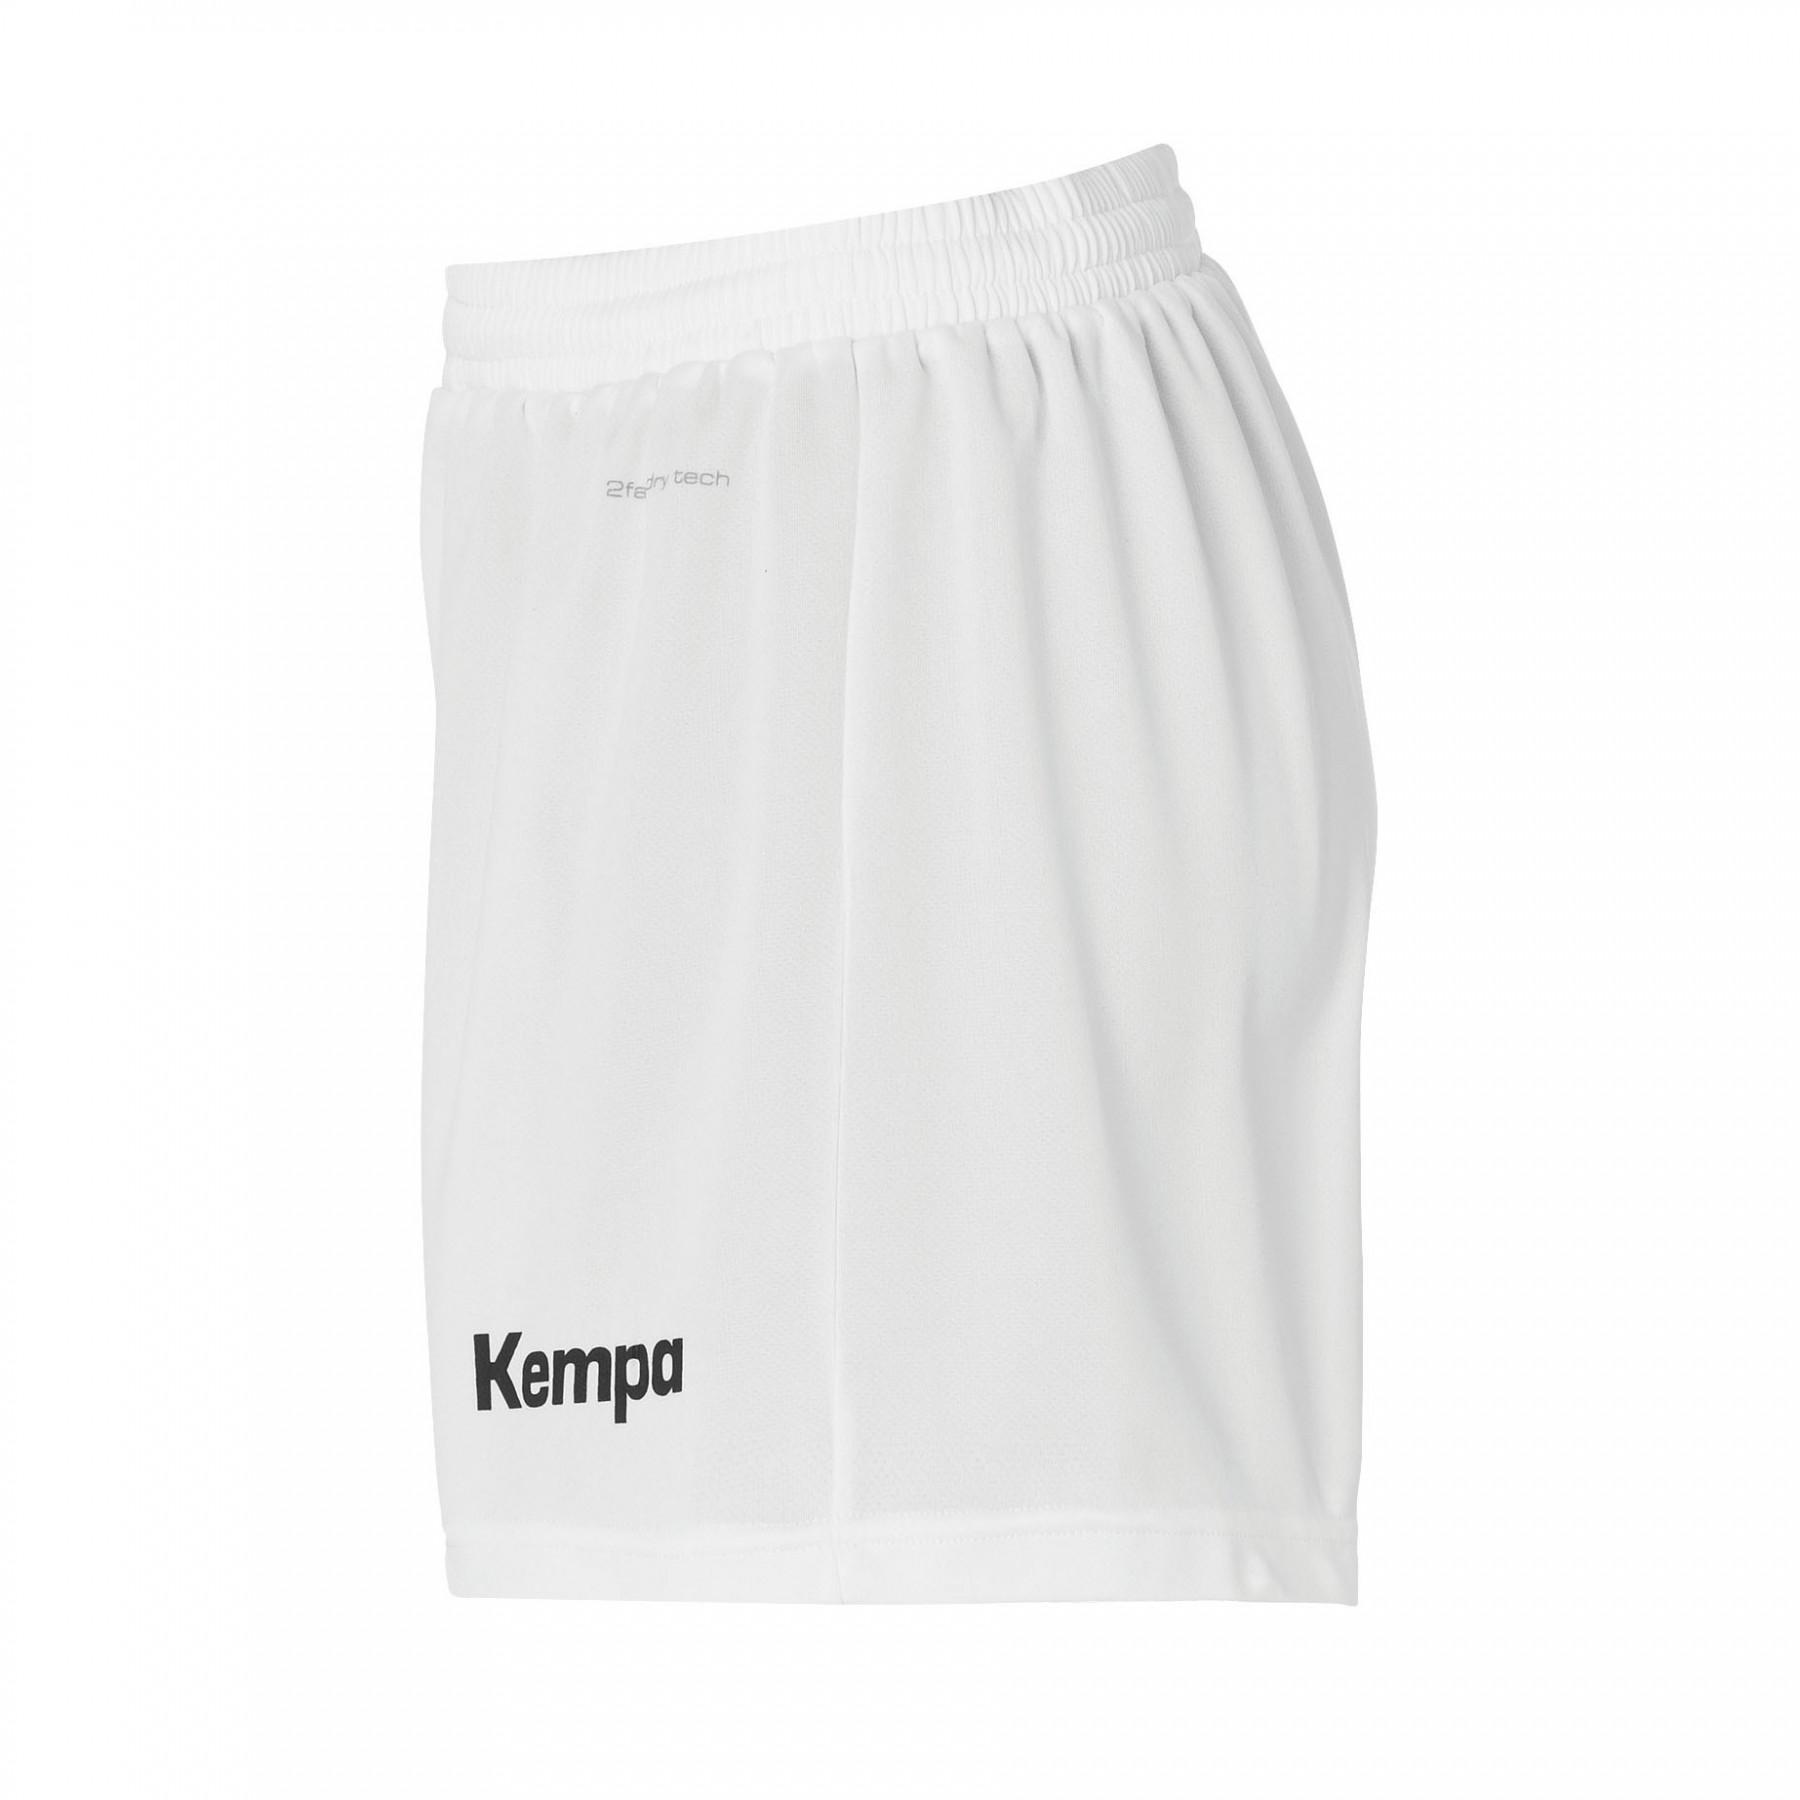 Pantalón corto mujer Kempa Peak